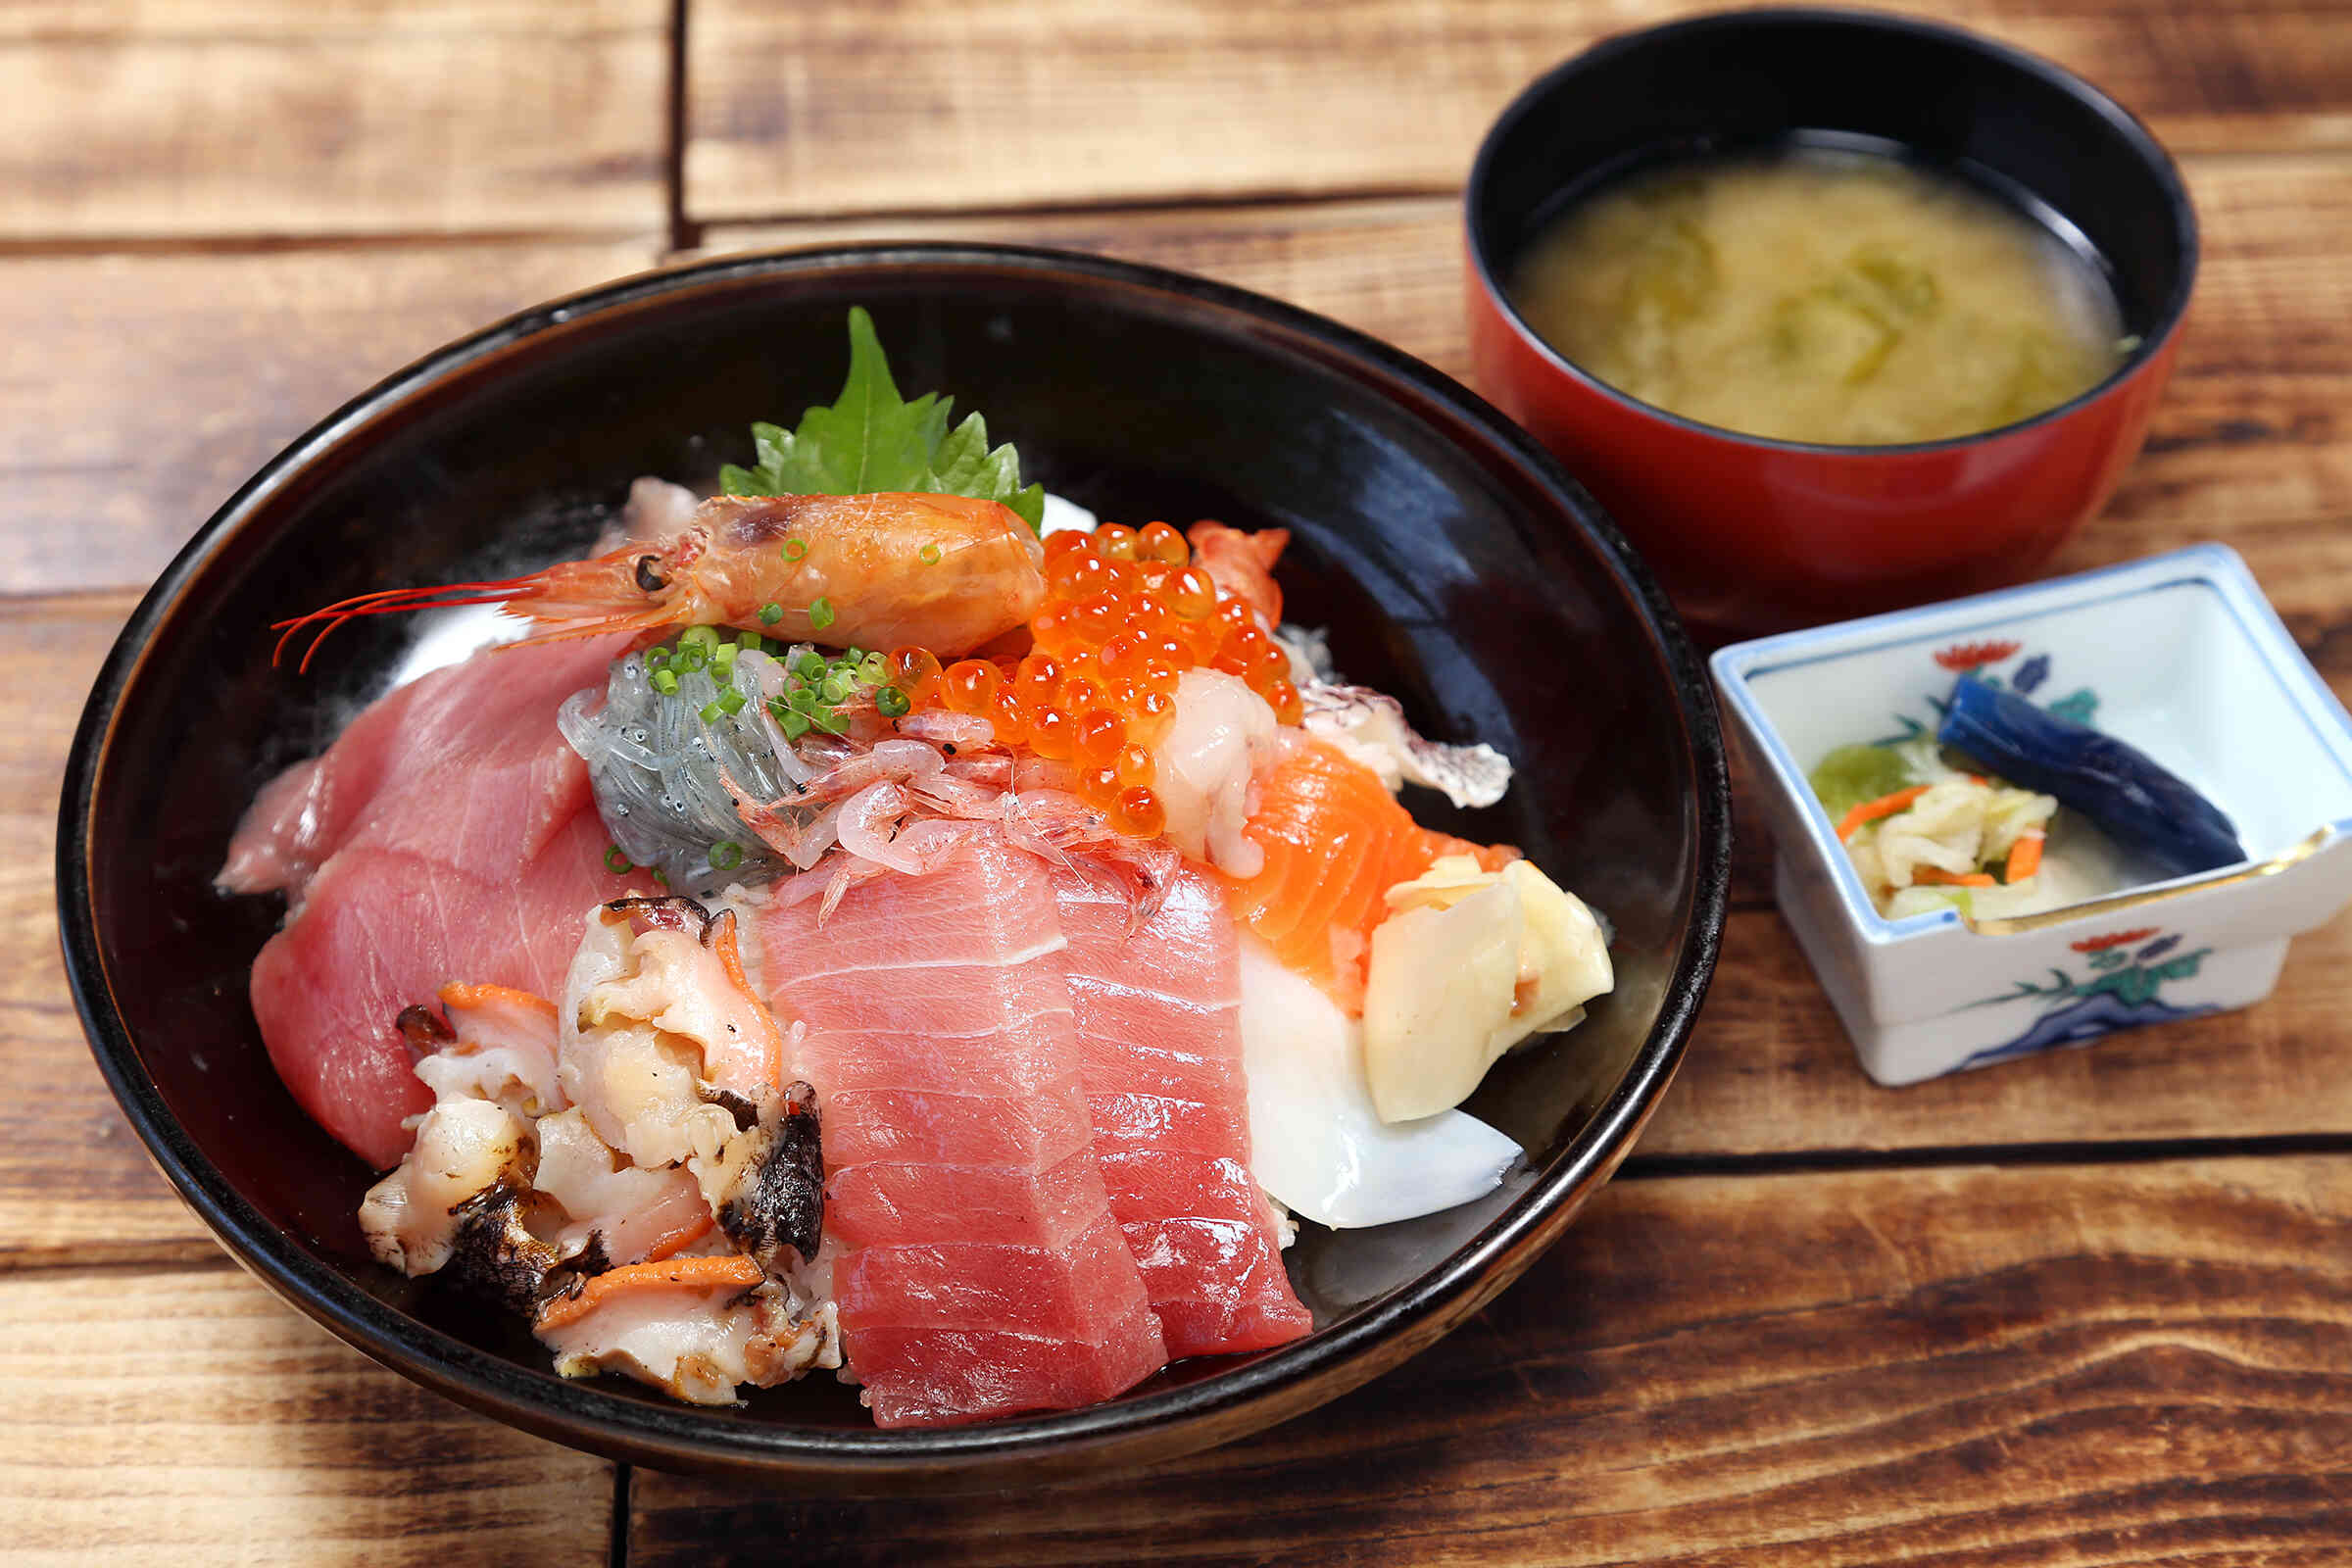 おすすめの特上海鮮丼、天然本まぐろ・しらす・桜えびをはじめ清水港満喫の海鮮丼です。